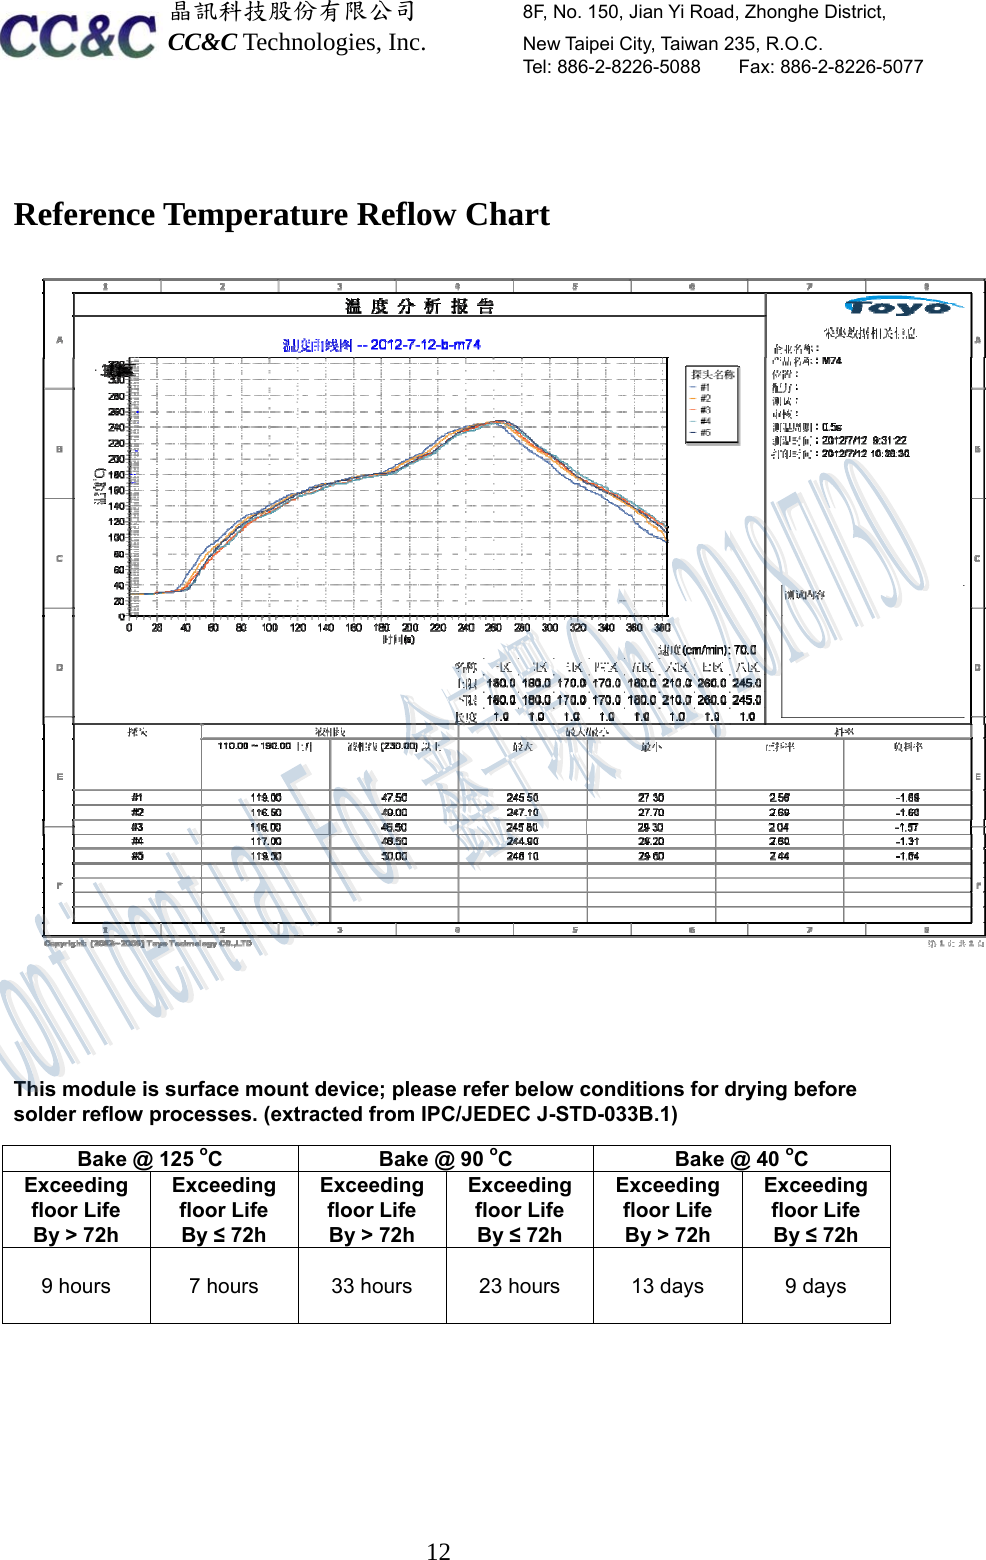  晶訊科技股份有限公司         8F, No. 150, Jian Yi Road, Zhonghe District,   CC&amp;C Technologies, Inc.        New Taipei City, Taiwan 235, R.O.C.   Tel: 886-2-8226-5088    Fax: 886-2-8226-5077  12 Reference Temperature Reflow Chart     This module is surface mount device; please refer below conditions for drying before solder reflow processes. (extracted from IPC/JEDEC J-STD-033B.1)   Bake @ 125 oC  Bake @ 90 oC  Bake @ 40 oC Exceeding  floor Life By &gt; 72h Exceeding  floor Life By ≤ 72h Exceeding floor Life By &gt; 72h Exceeding floor Life By ≤ 72h Exceeding  floor Life By &gt; 72h Exceeding floor Life By ≤ 72h  9 hours   7 hours  33 hours  23 hours  13 days  9 days       